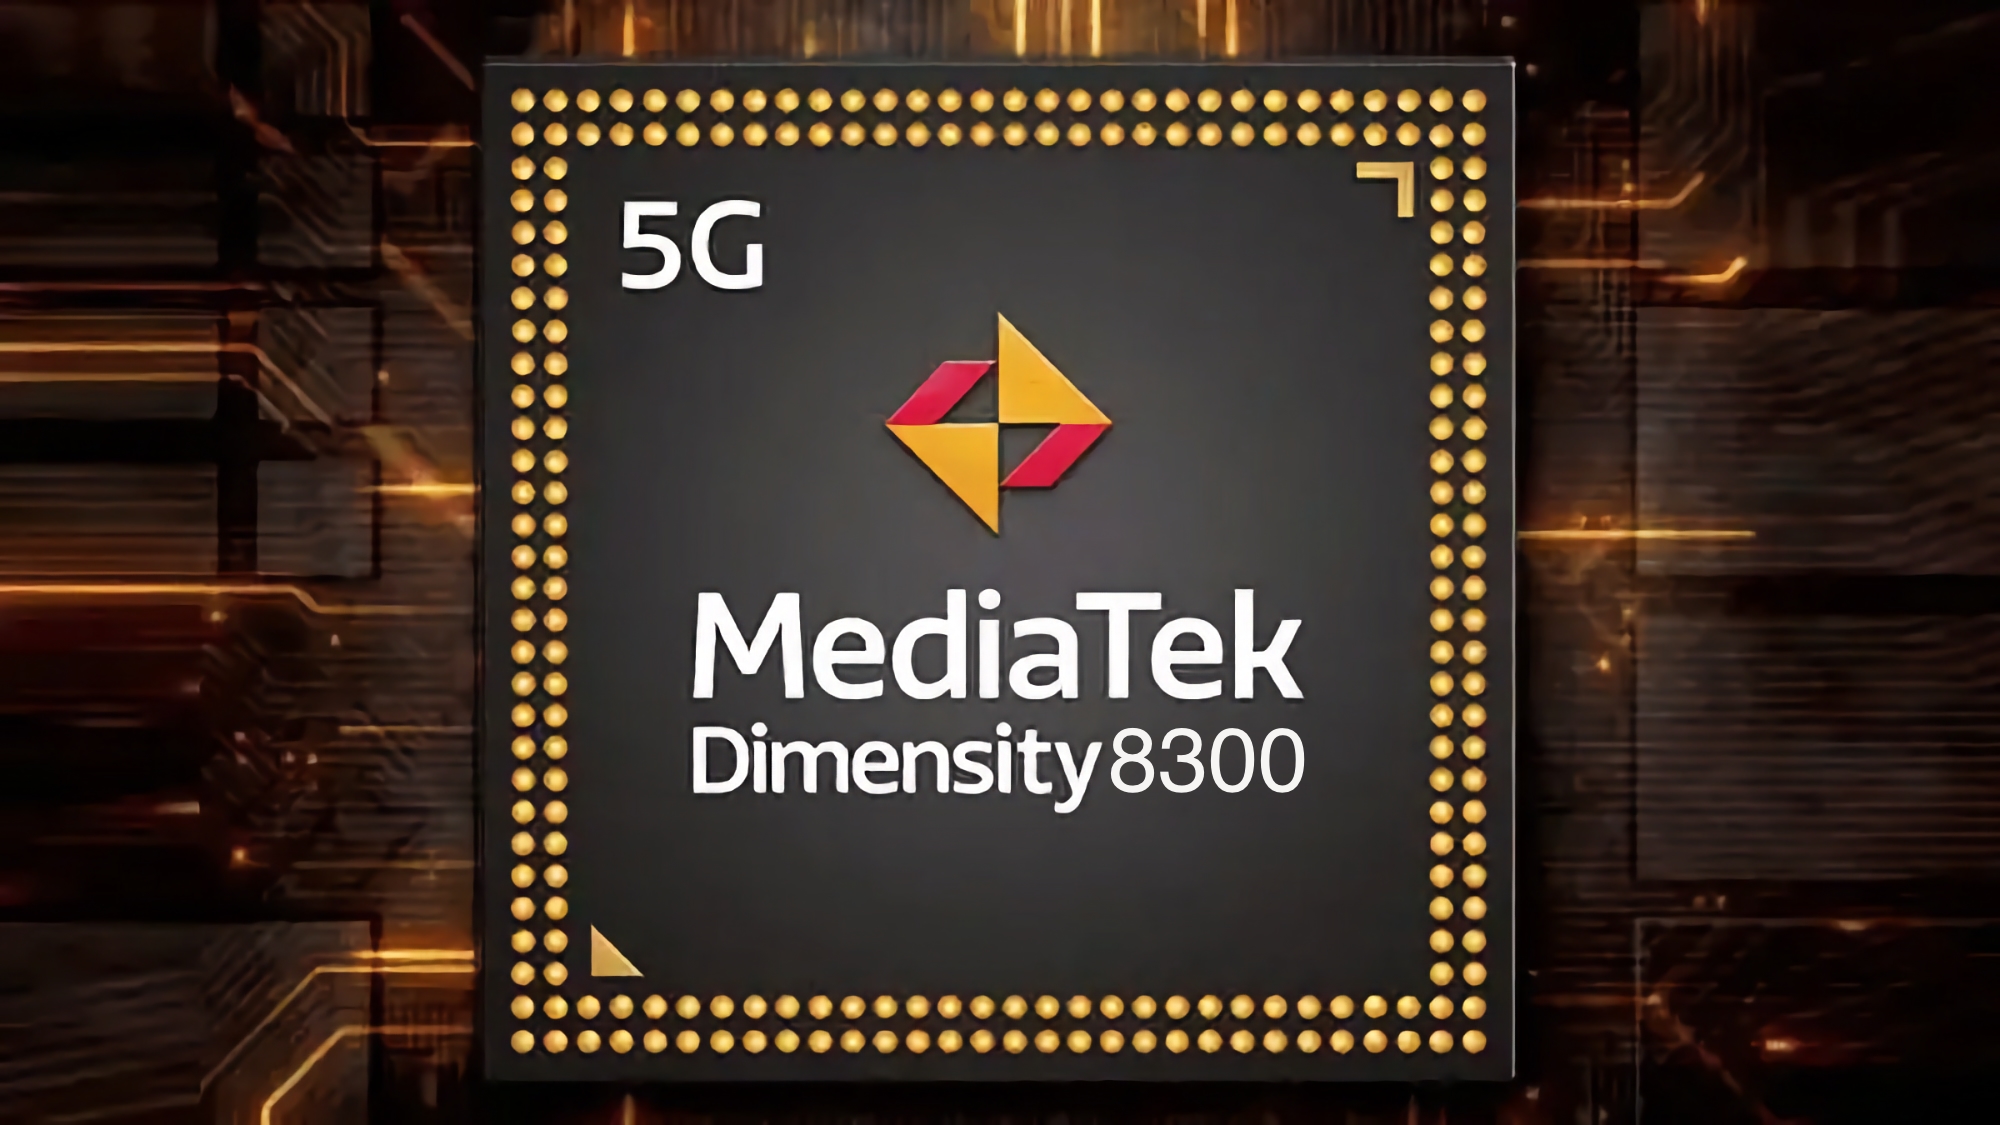 Nå er det offisielt: MediaTek vil avduke Dimensity 8300-prosessoren på en presentasjon 21. november.